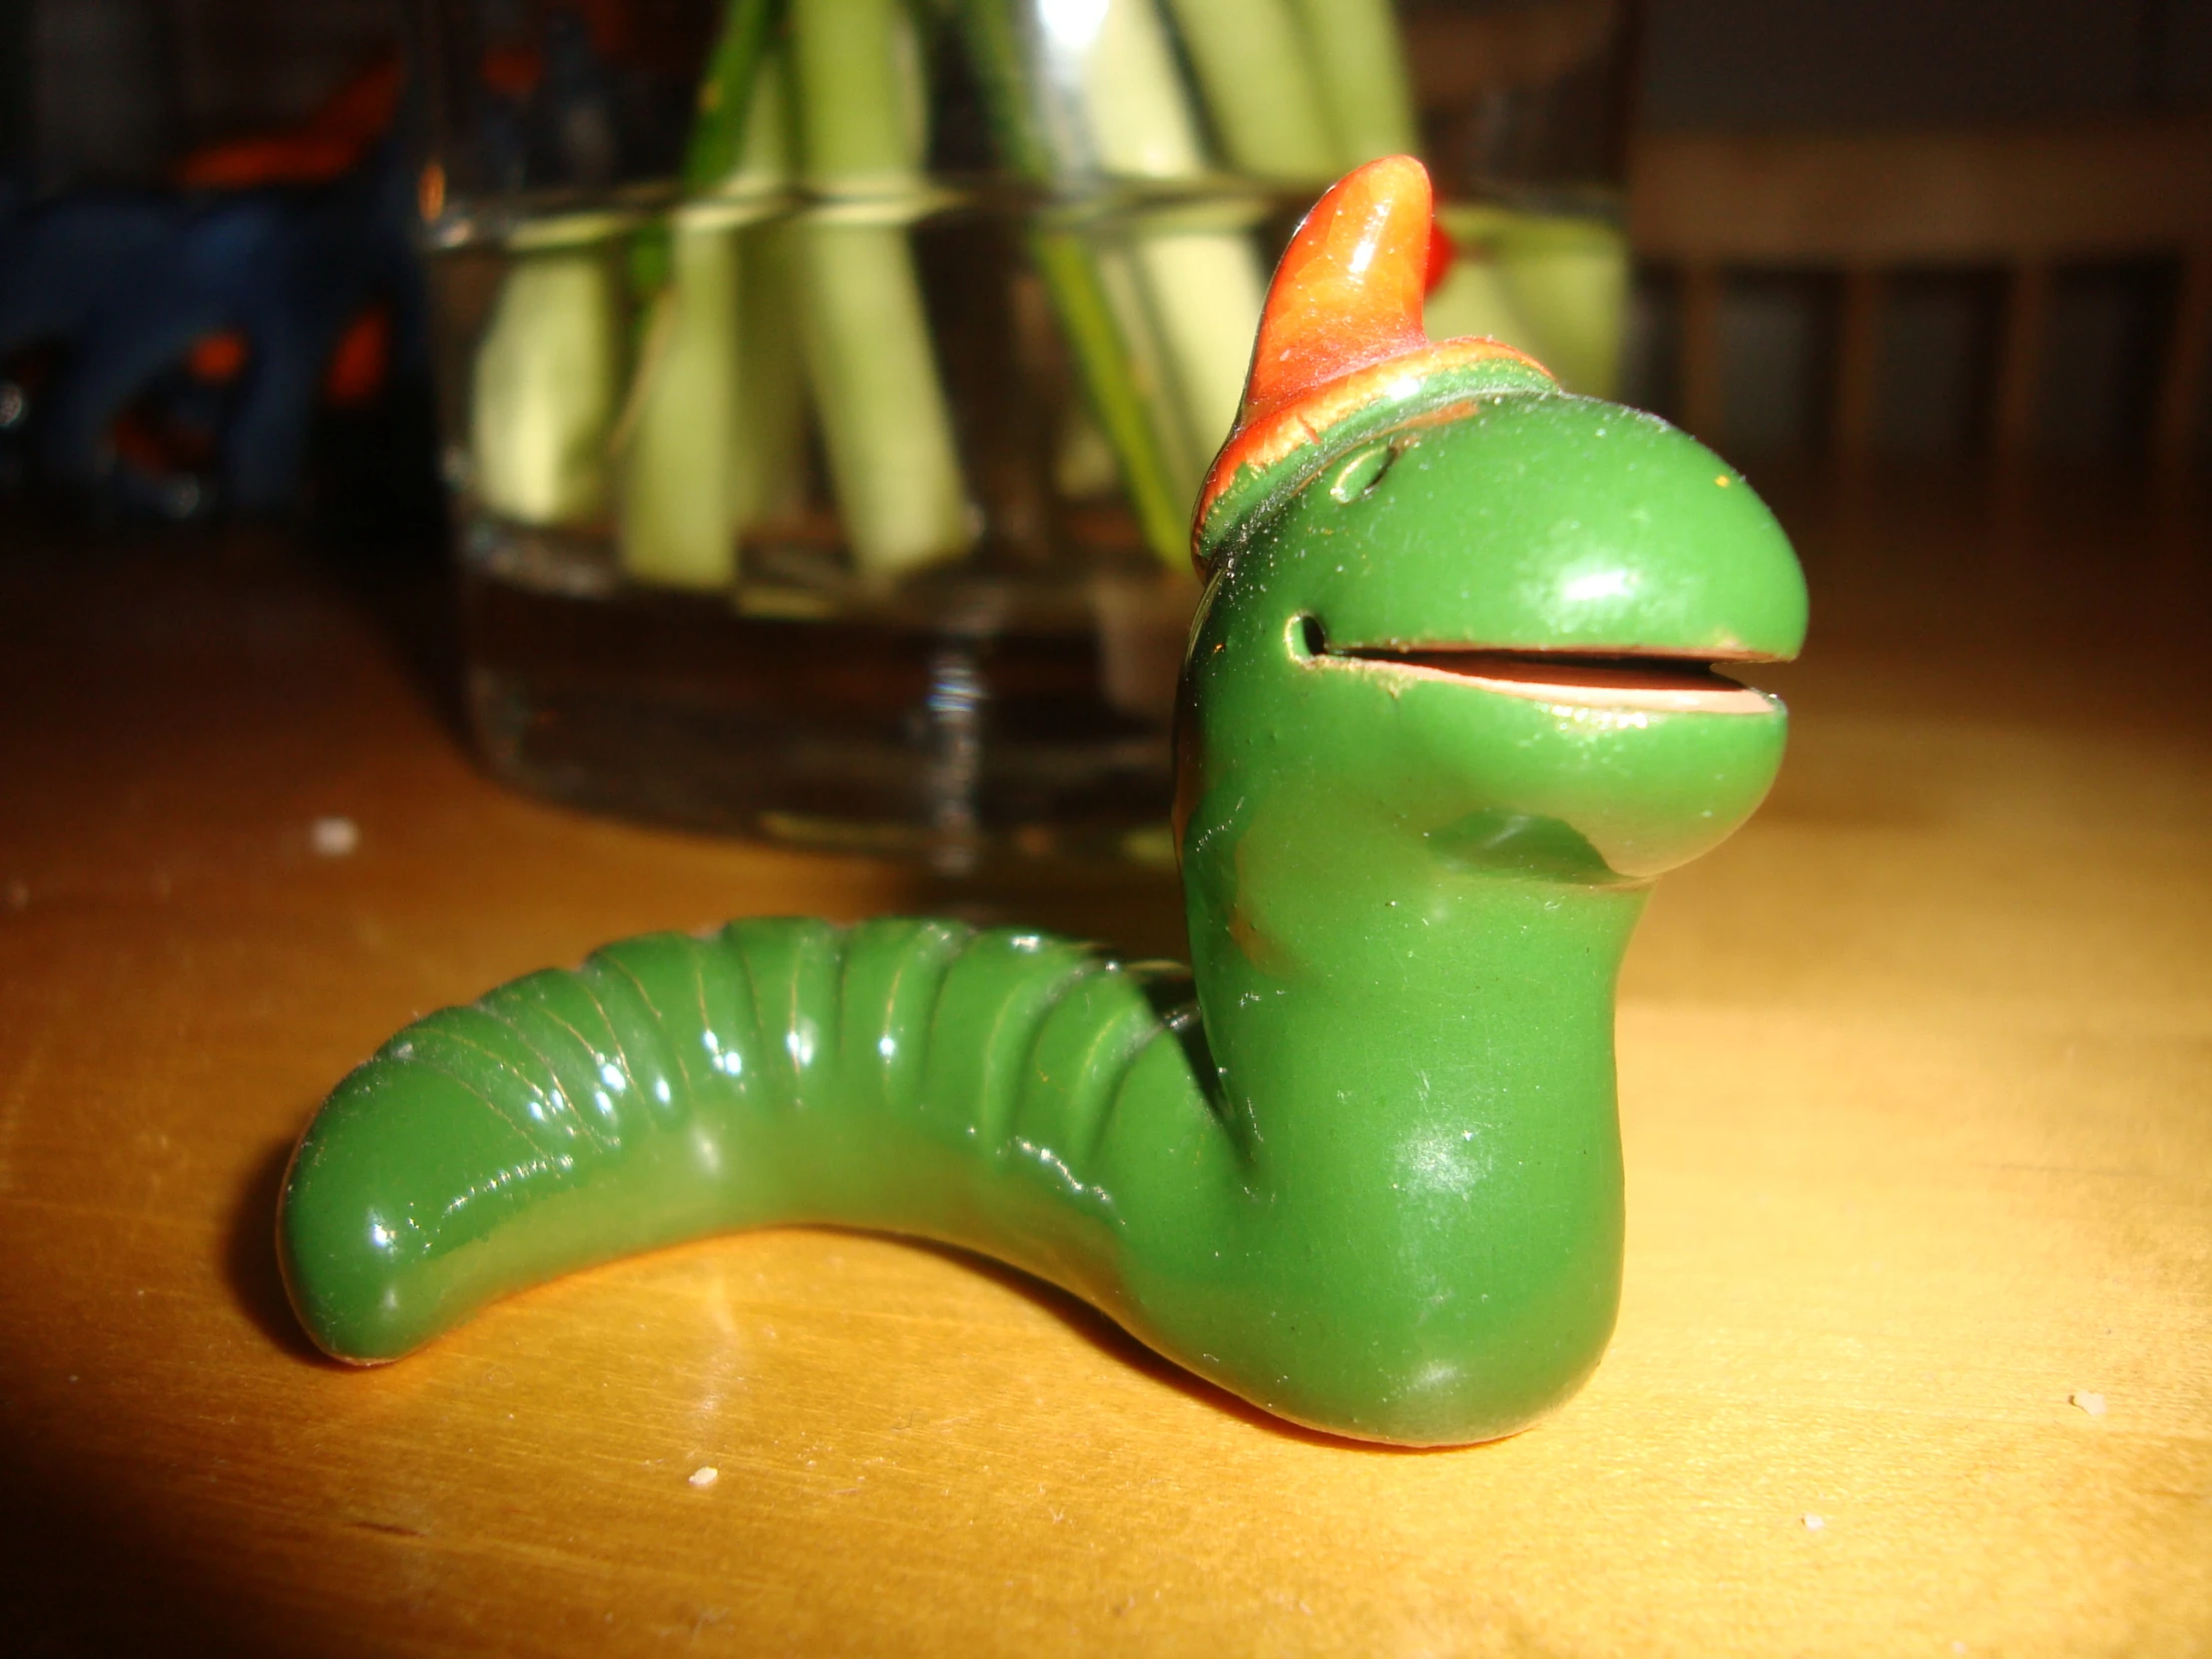 a green toy slug has a red hat on